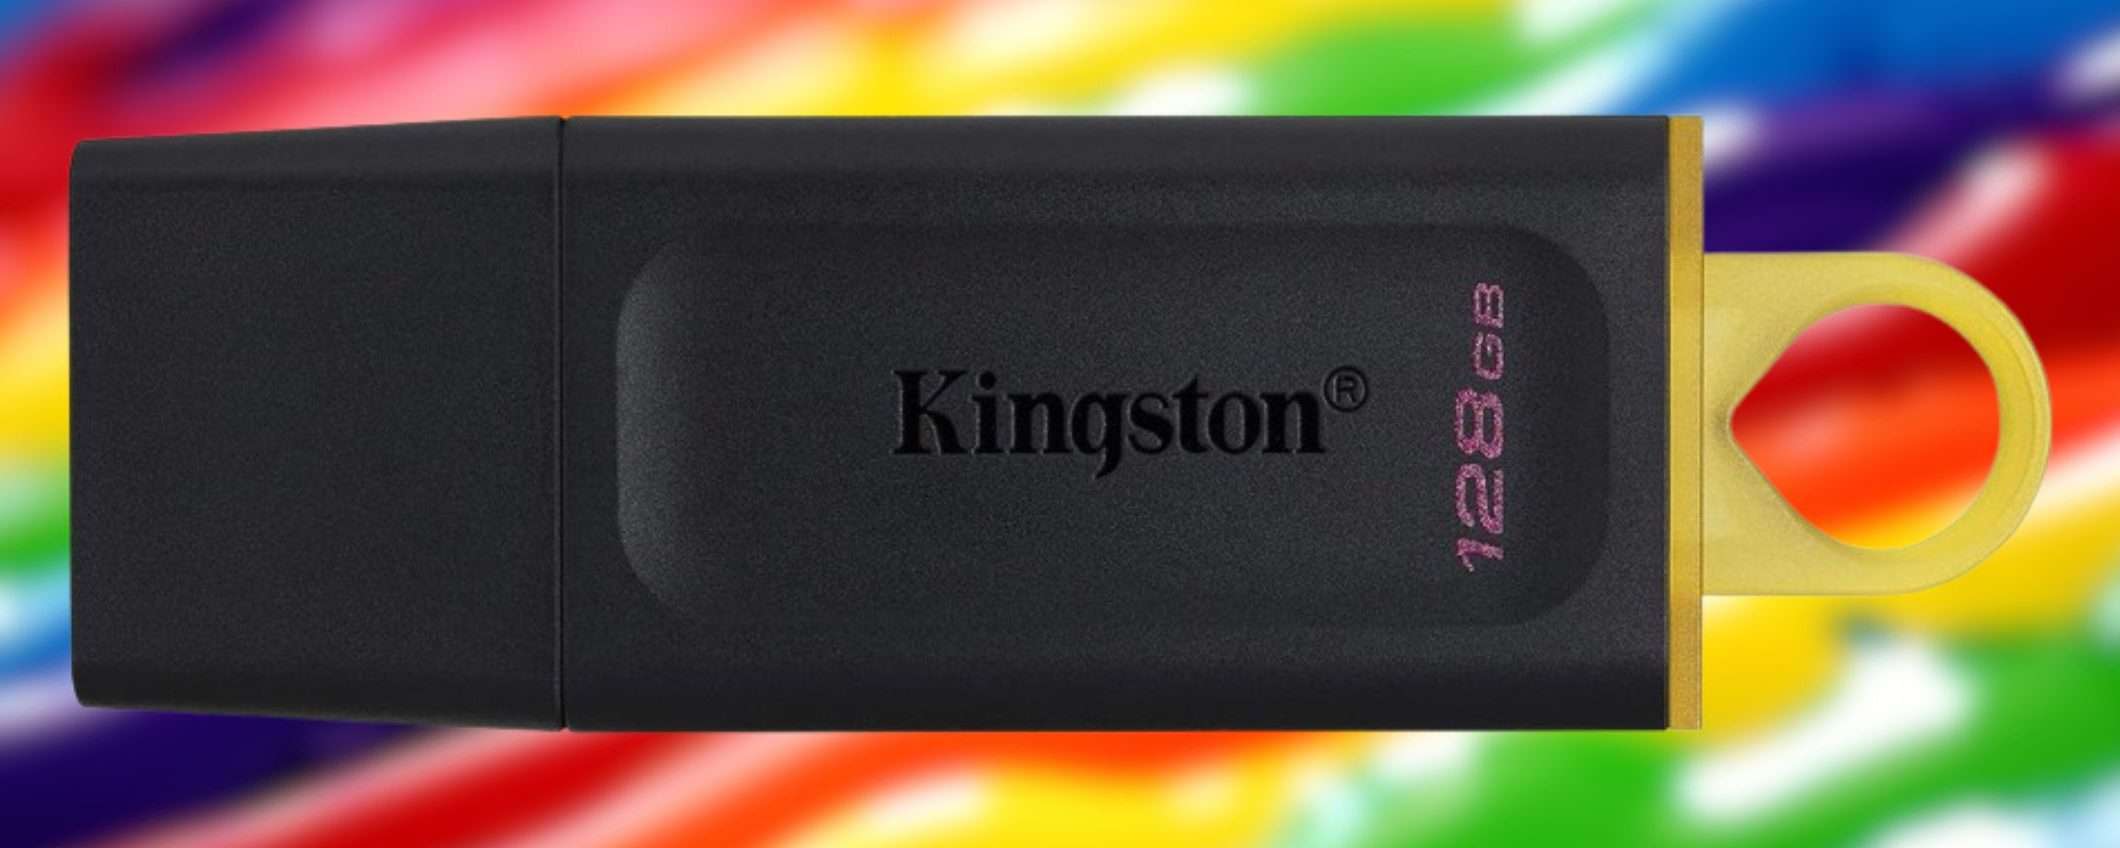 Kingston SVUOTATUTTO su Amazon: potente chiavetta 128GB a 8€ (-55%)